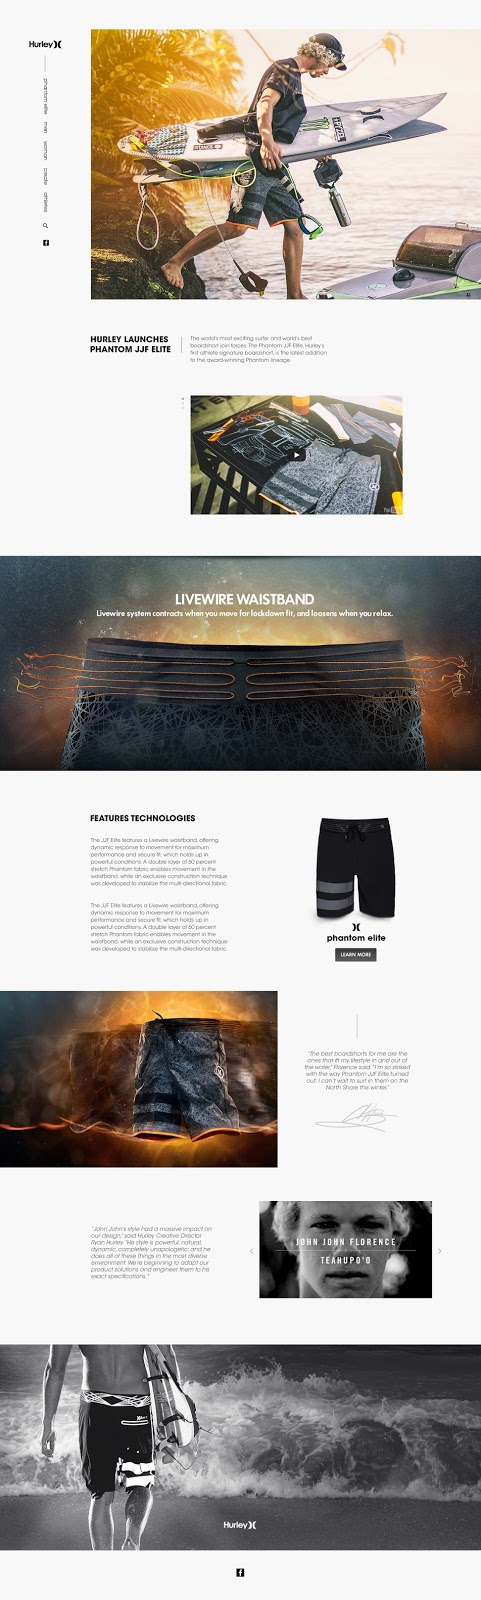 Thiết kế website bán hàng quần áo thể thao